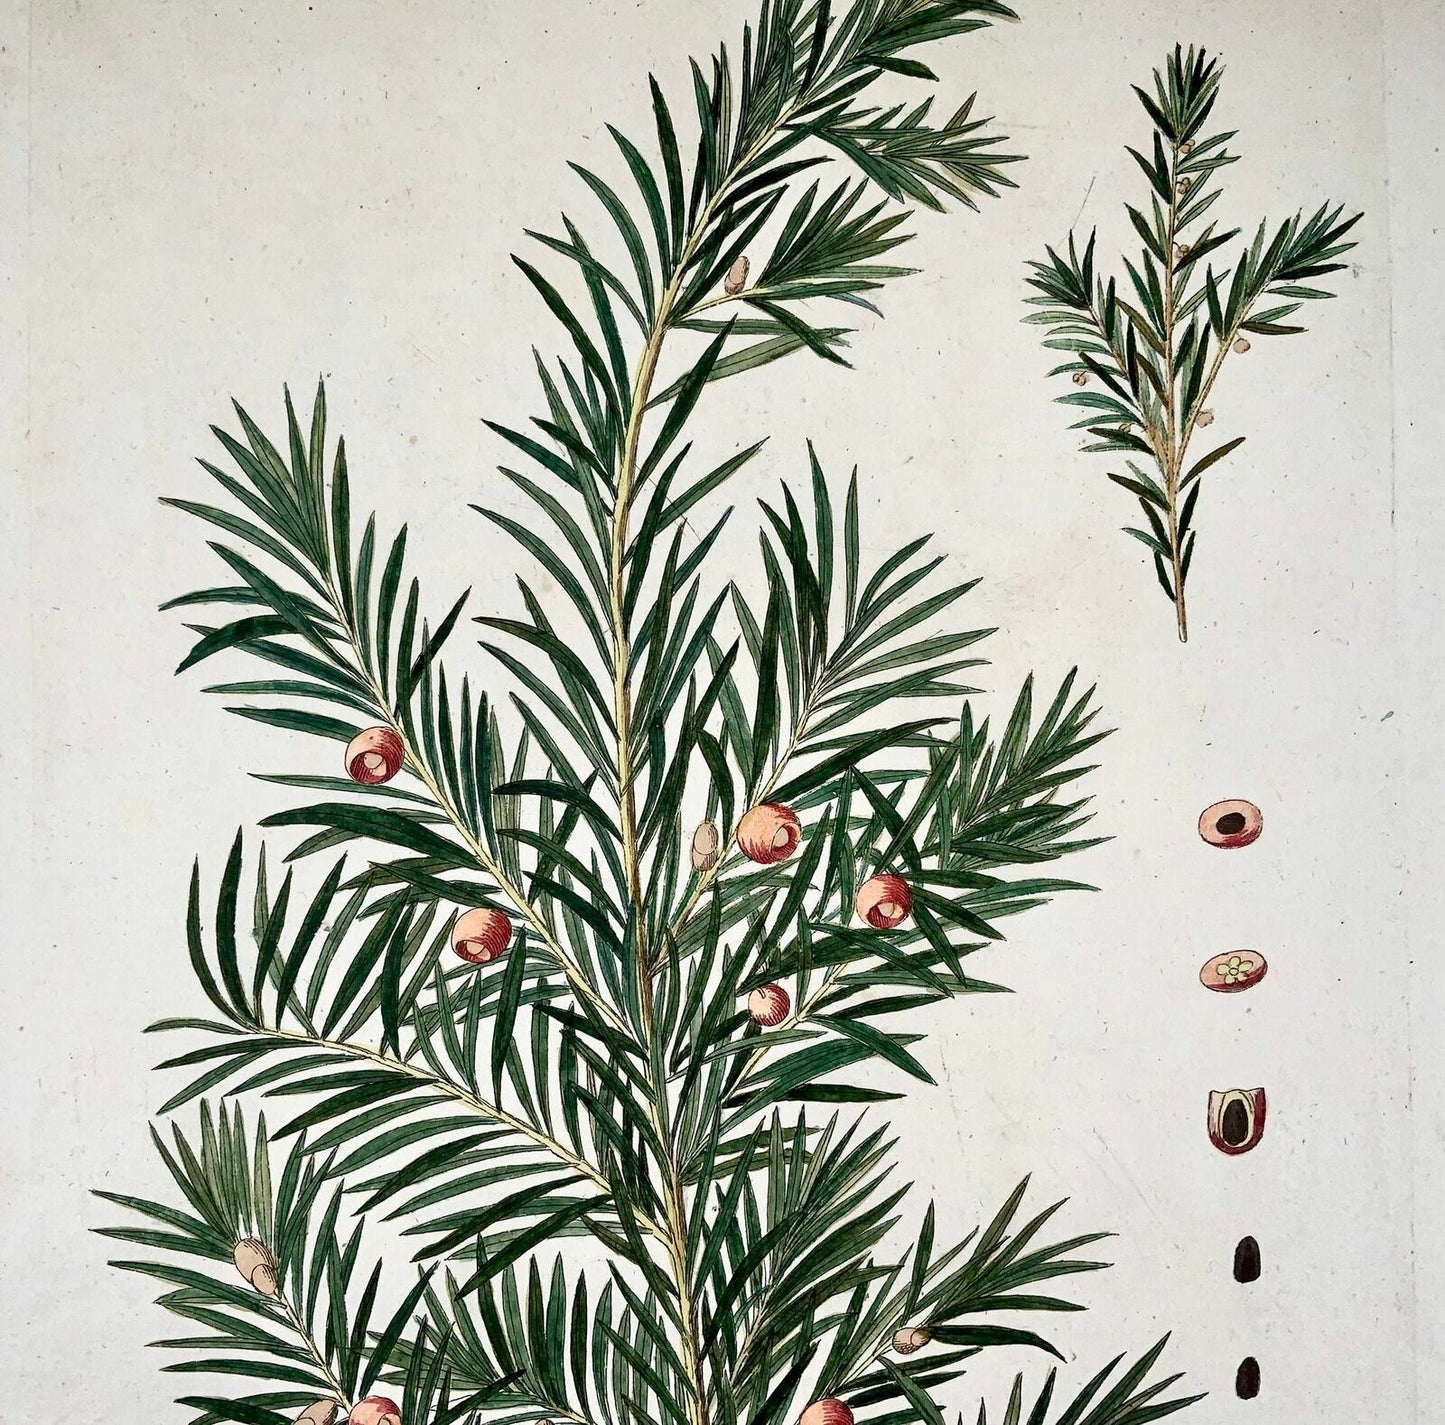 1788 If, dendrologie, JJ Plenck, Icones plantarum, 45cm, folio